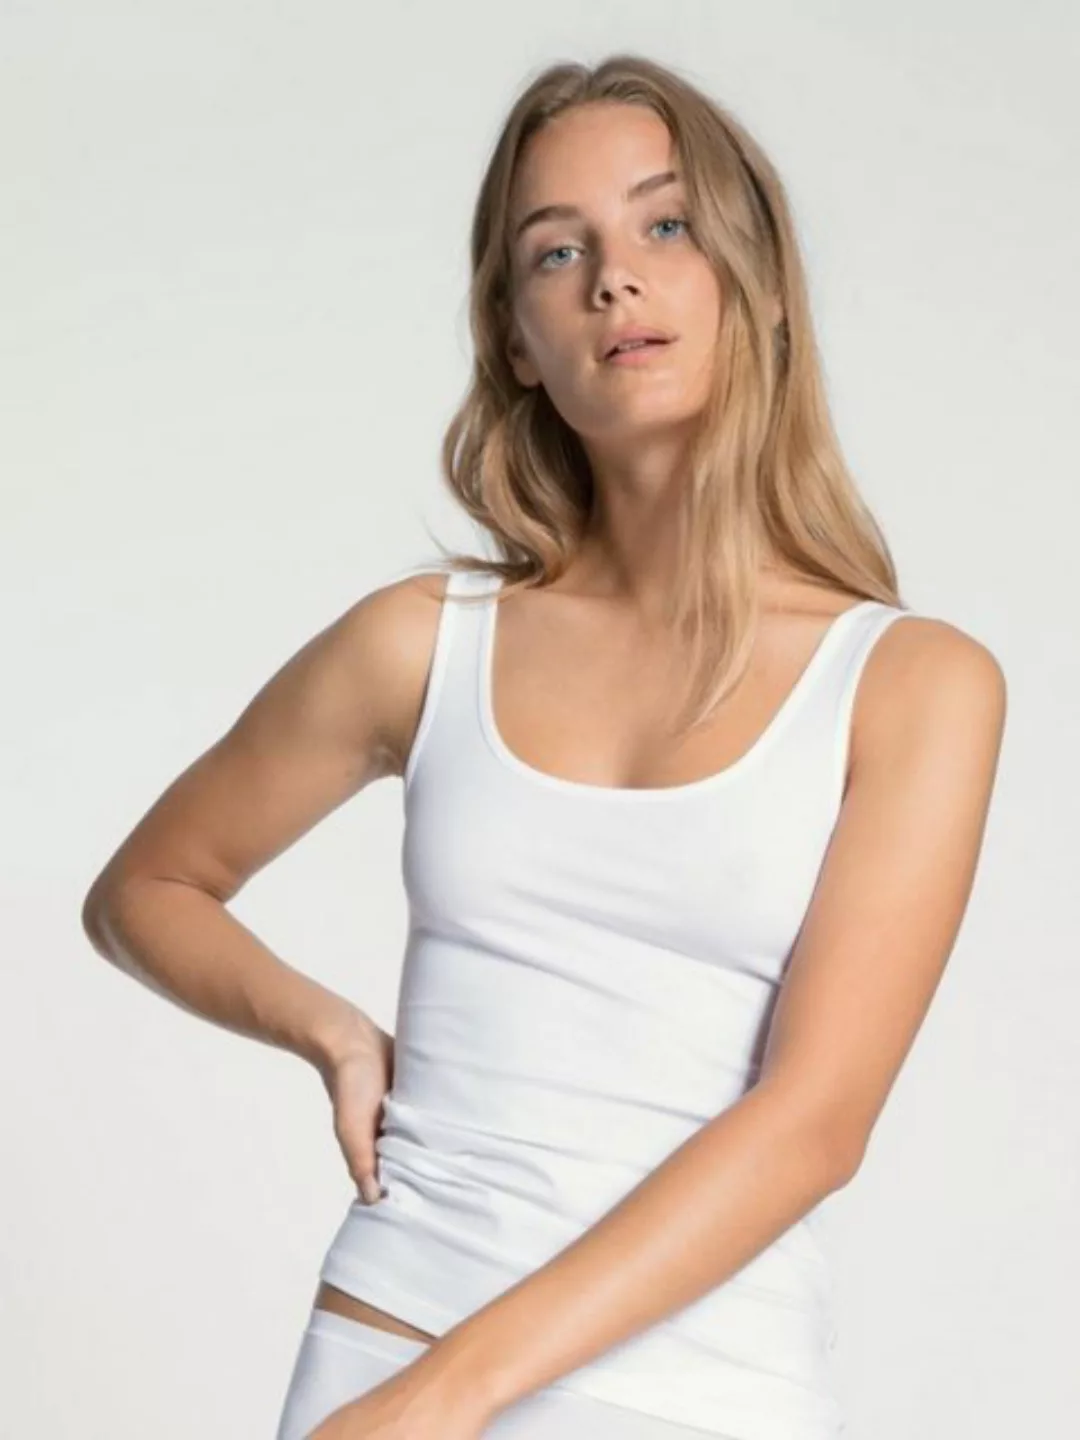 CALIDA T-Shirt DAMEN Top ohne Arm günstig online kaufen